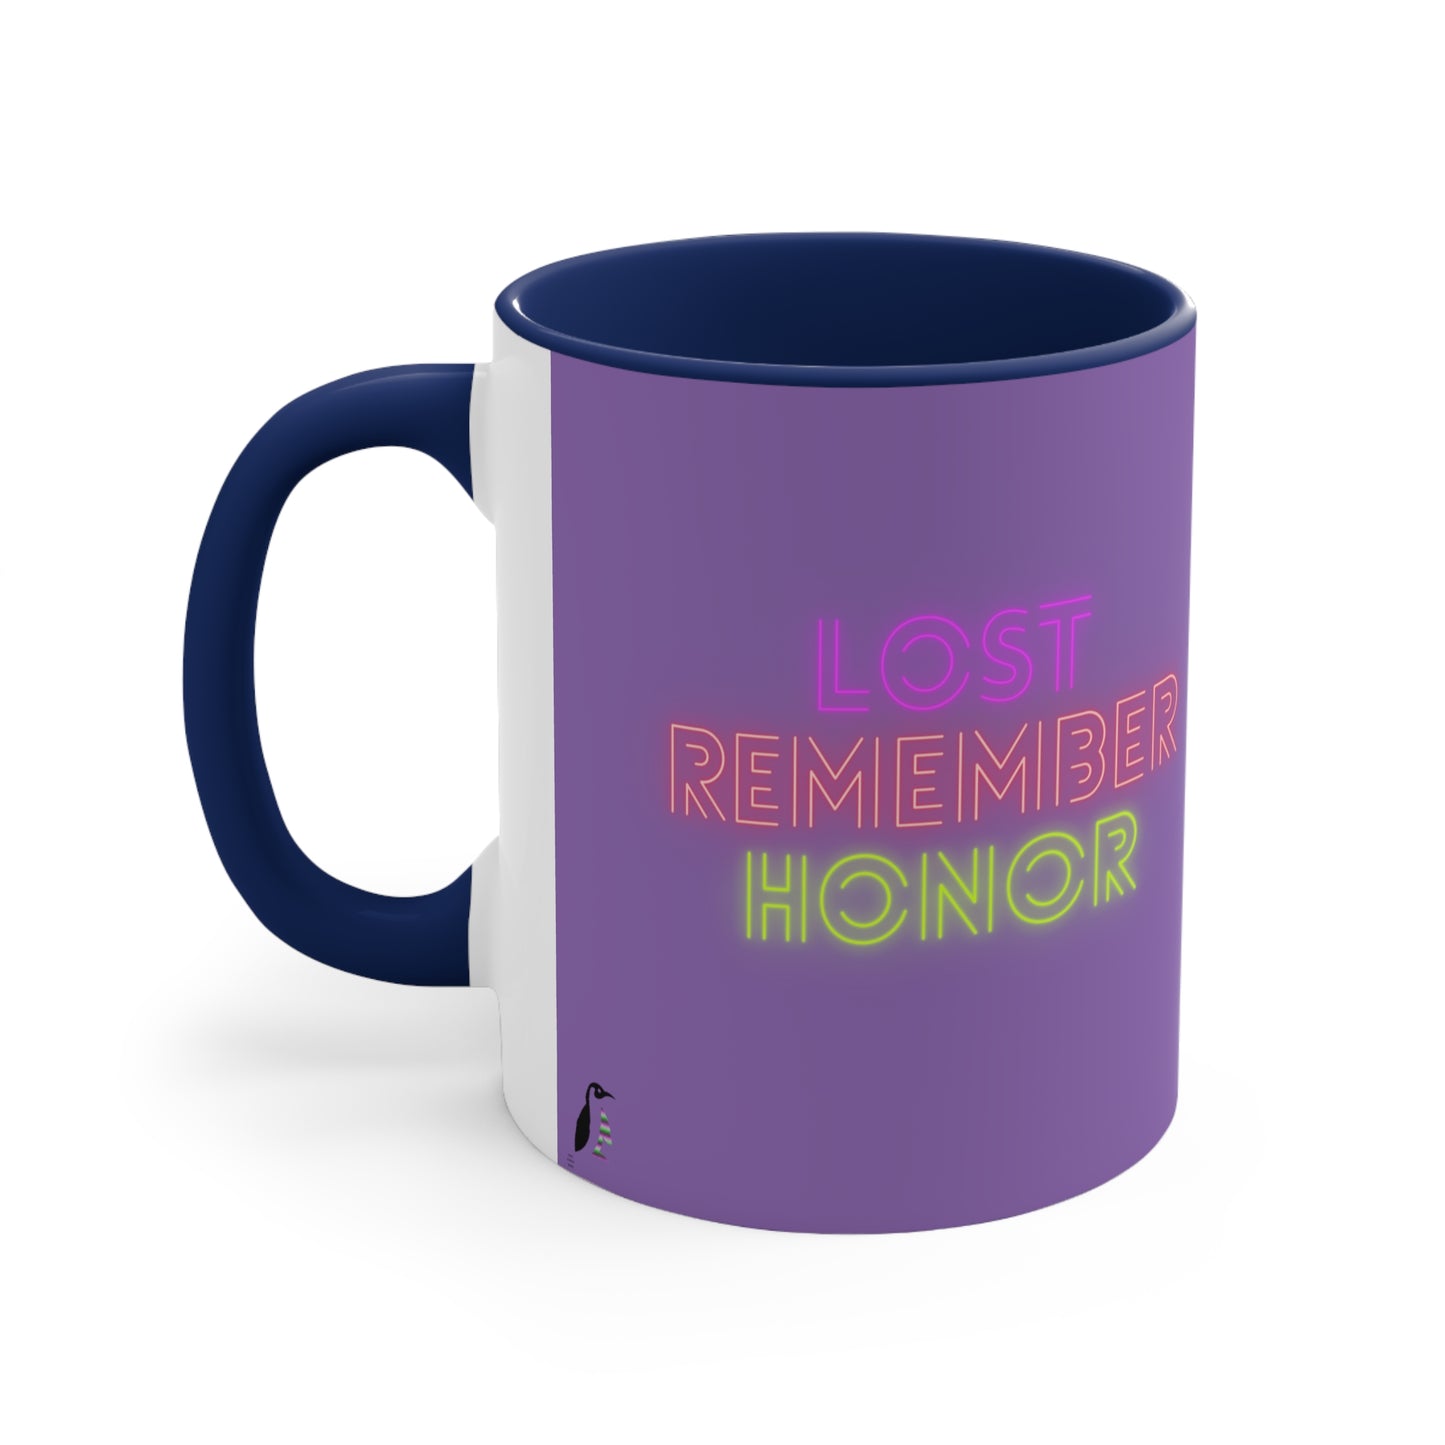 Accent Coffee Mug, 11oz: Dragons Lite Purple